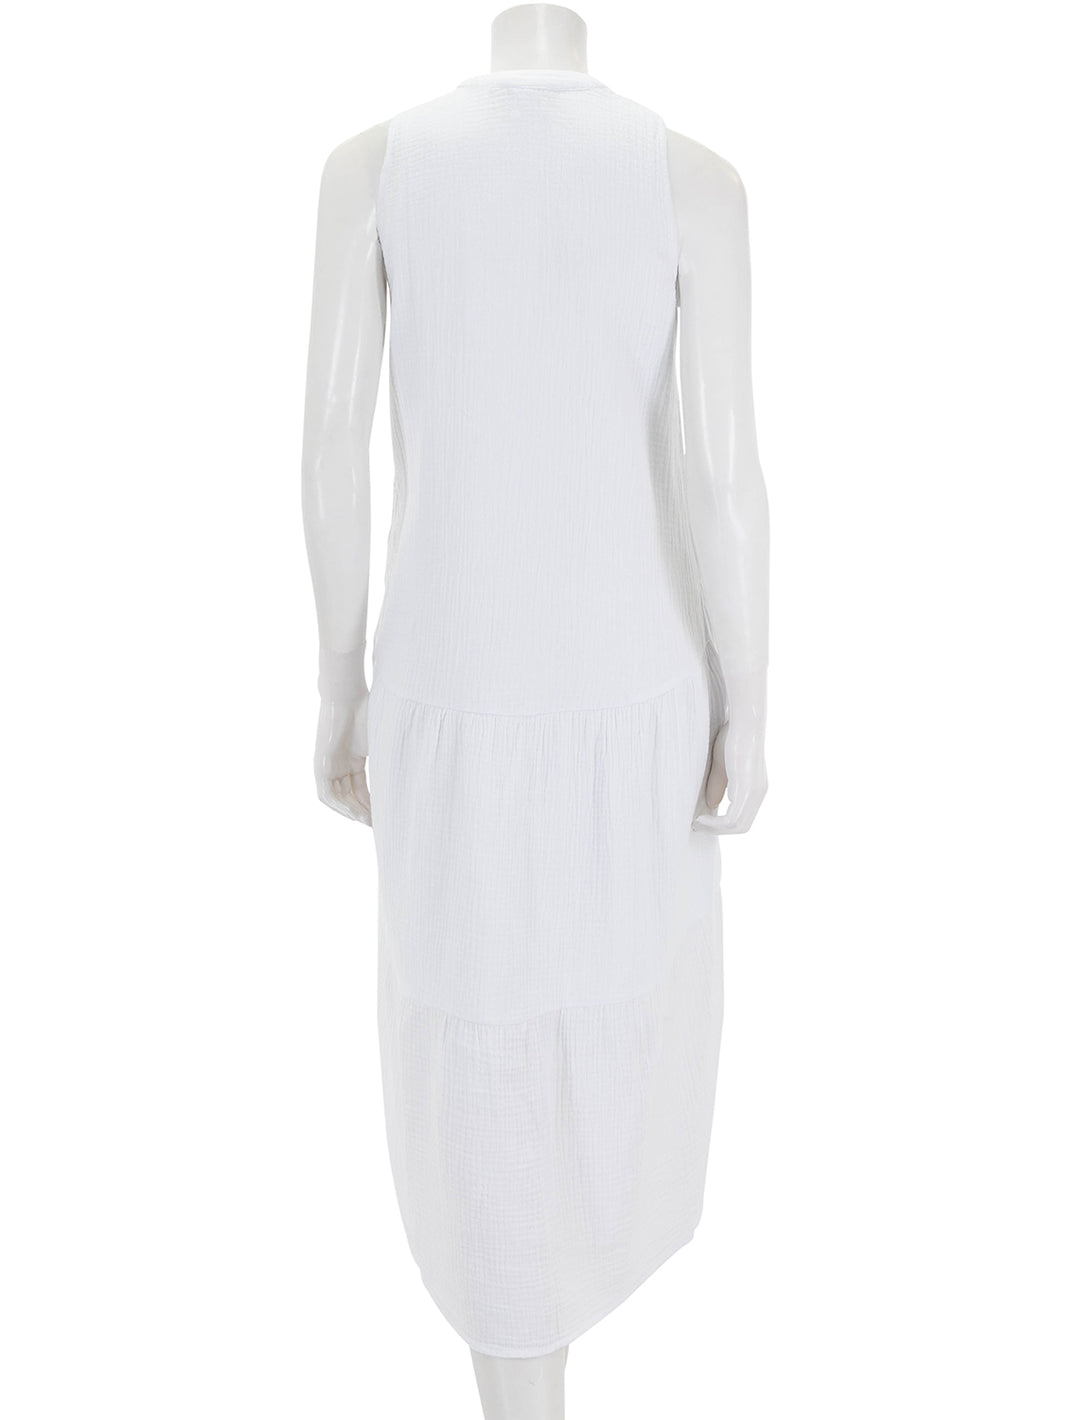 Back view of Splendid's sumner gauze maxi dress in white.